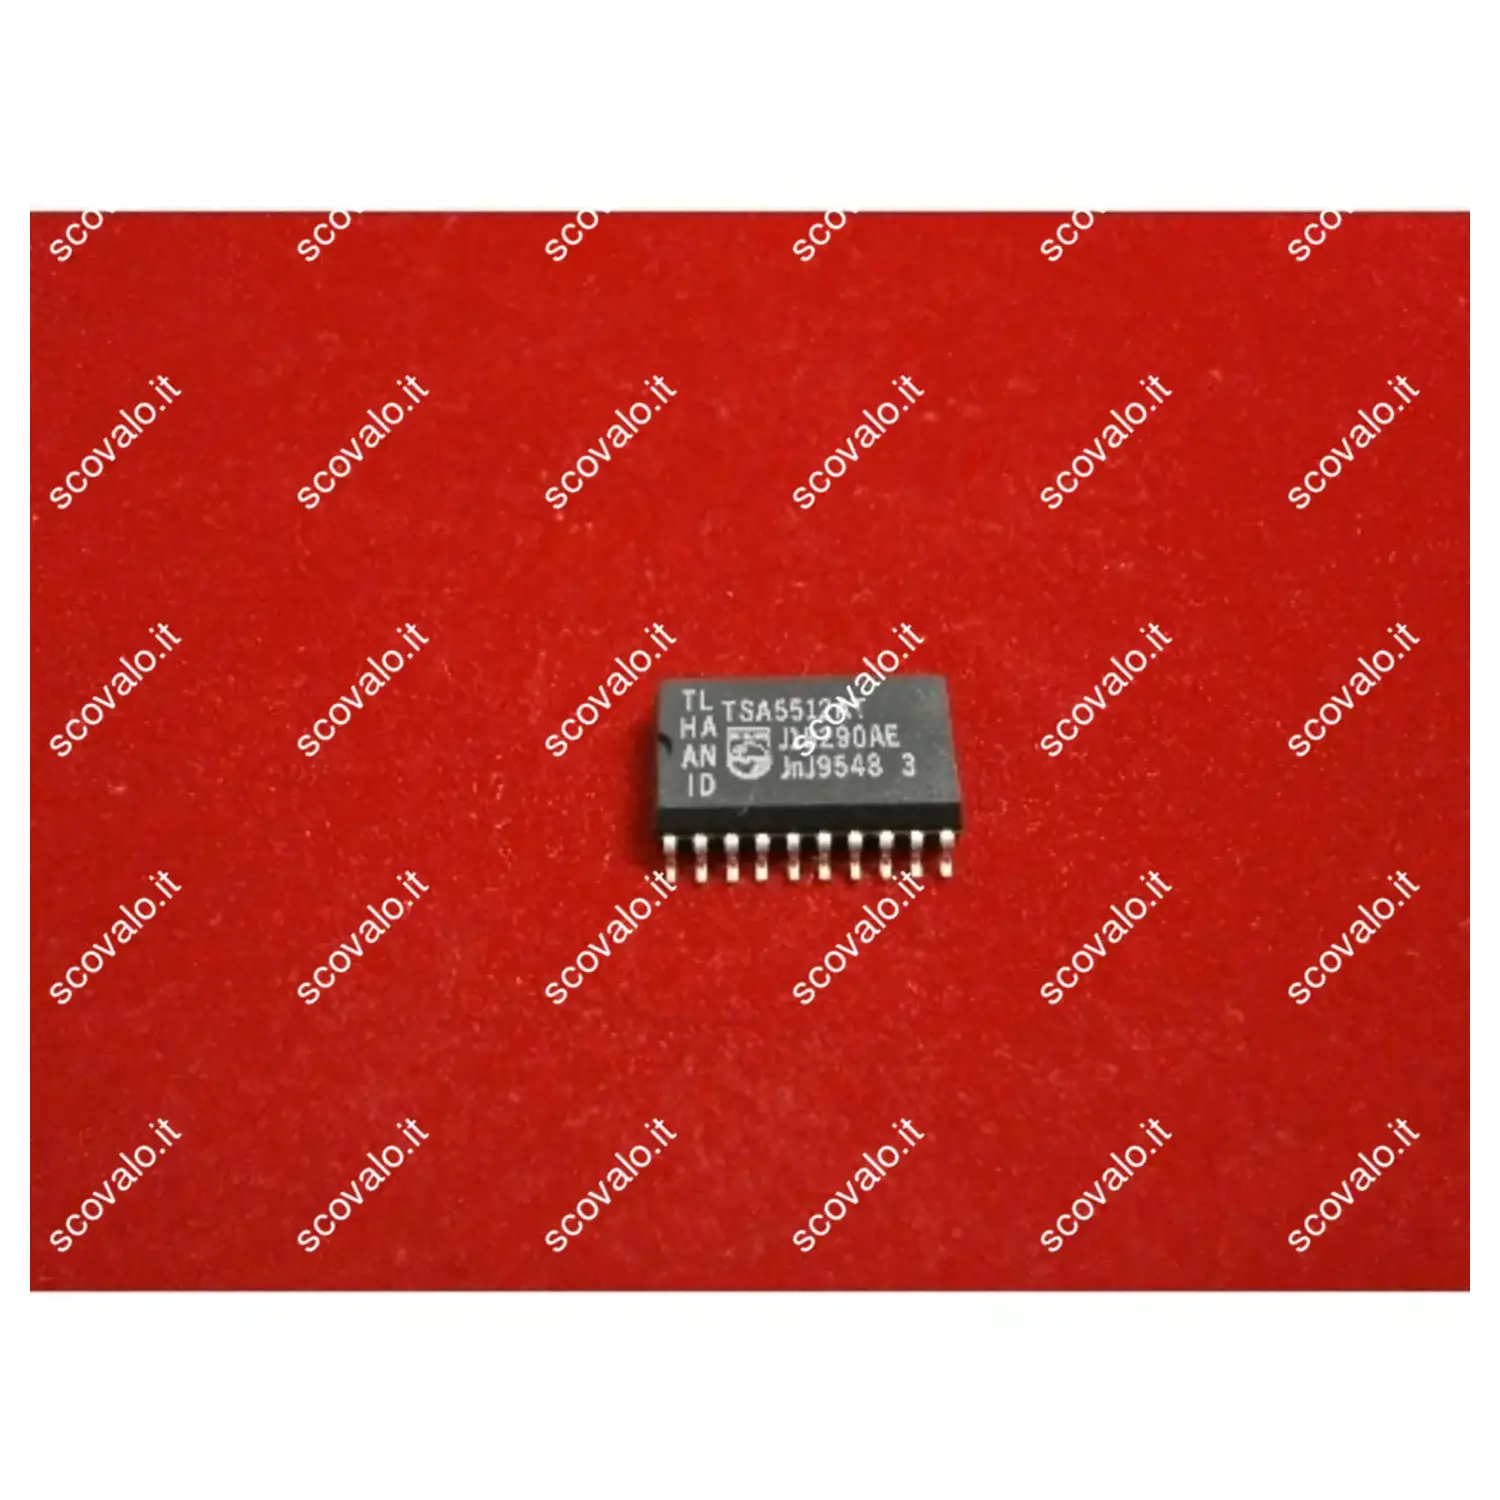 immagine del prodotto circuito integrato smd tsa5512at numero pin 20